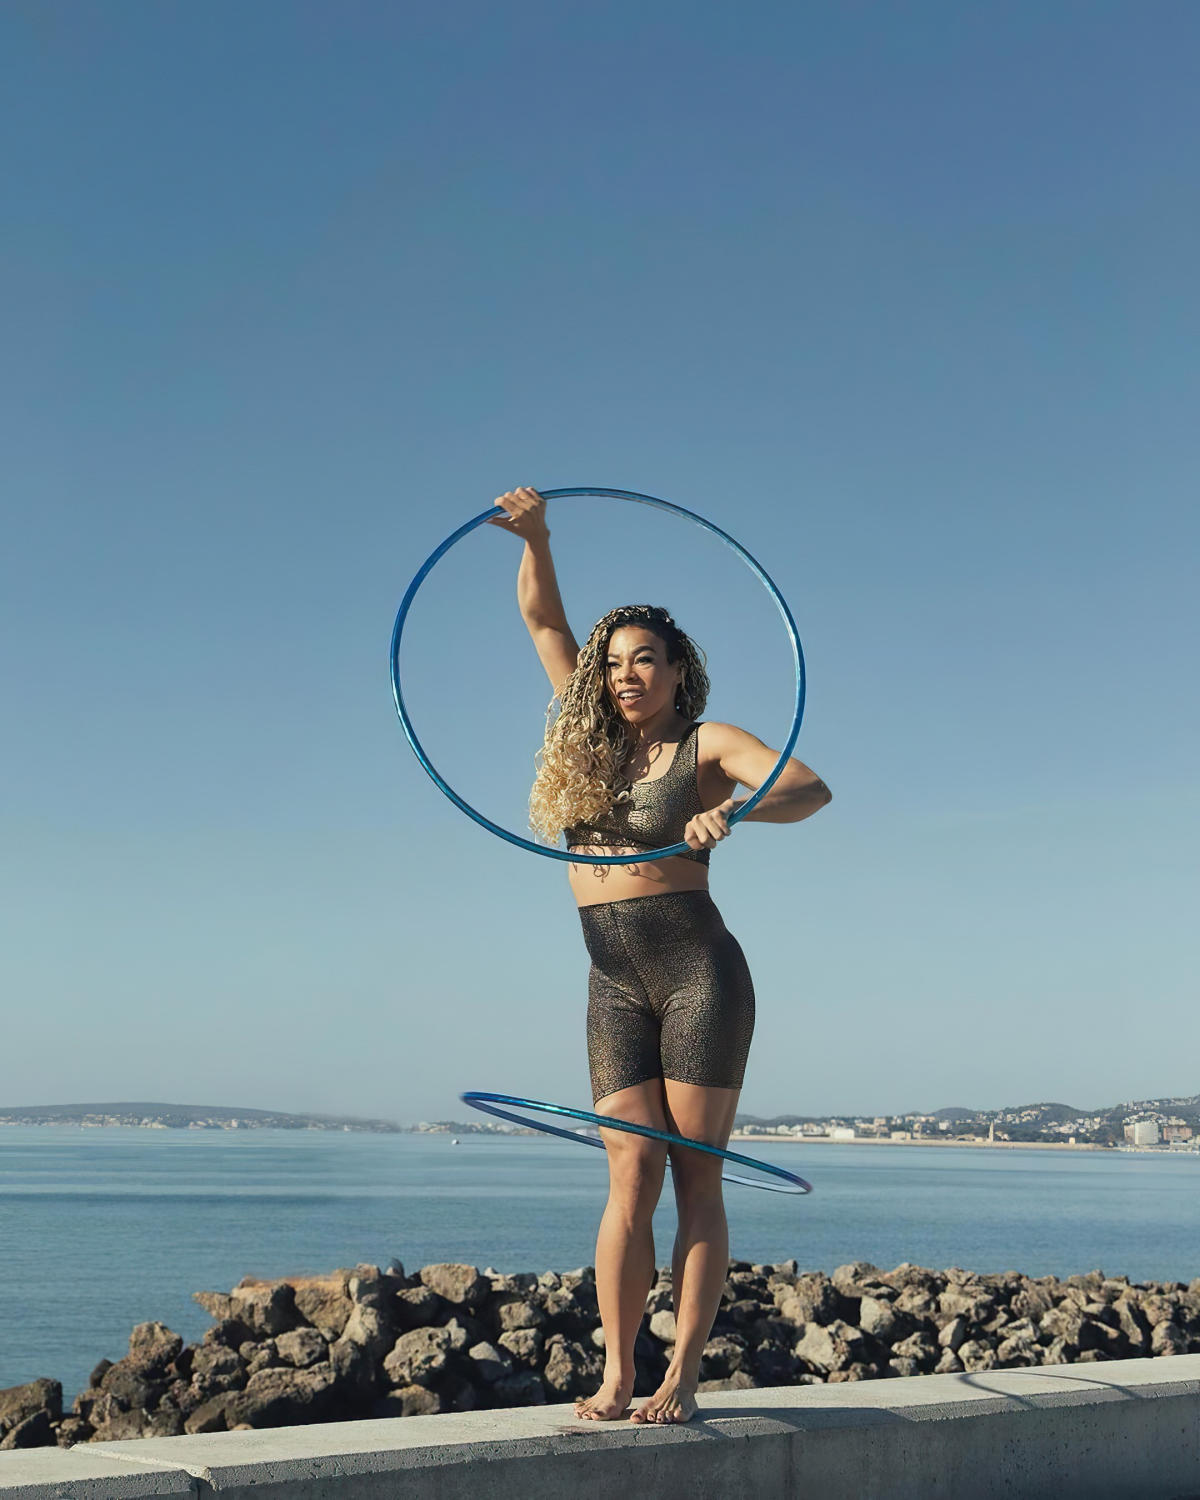 ist hula hoop training gesund und effektiv